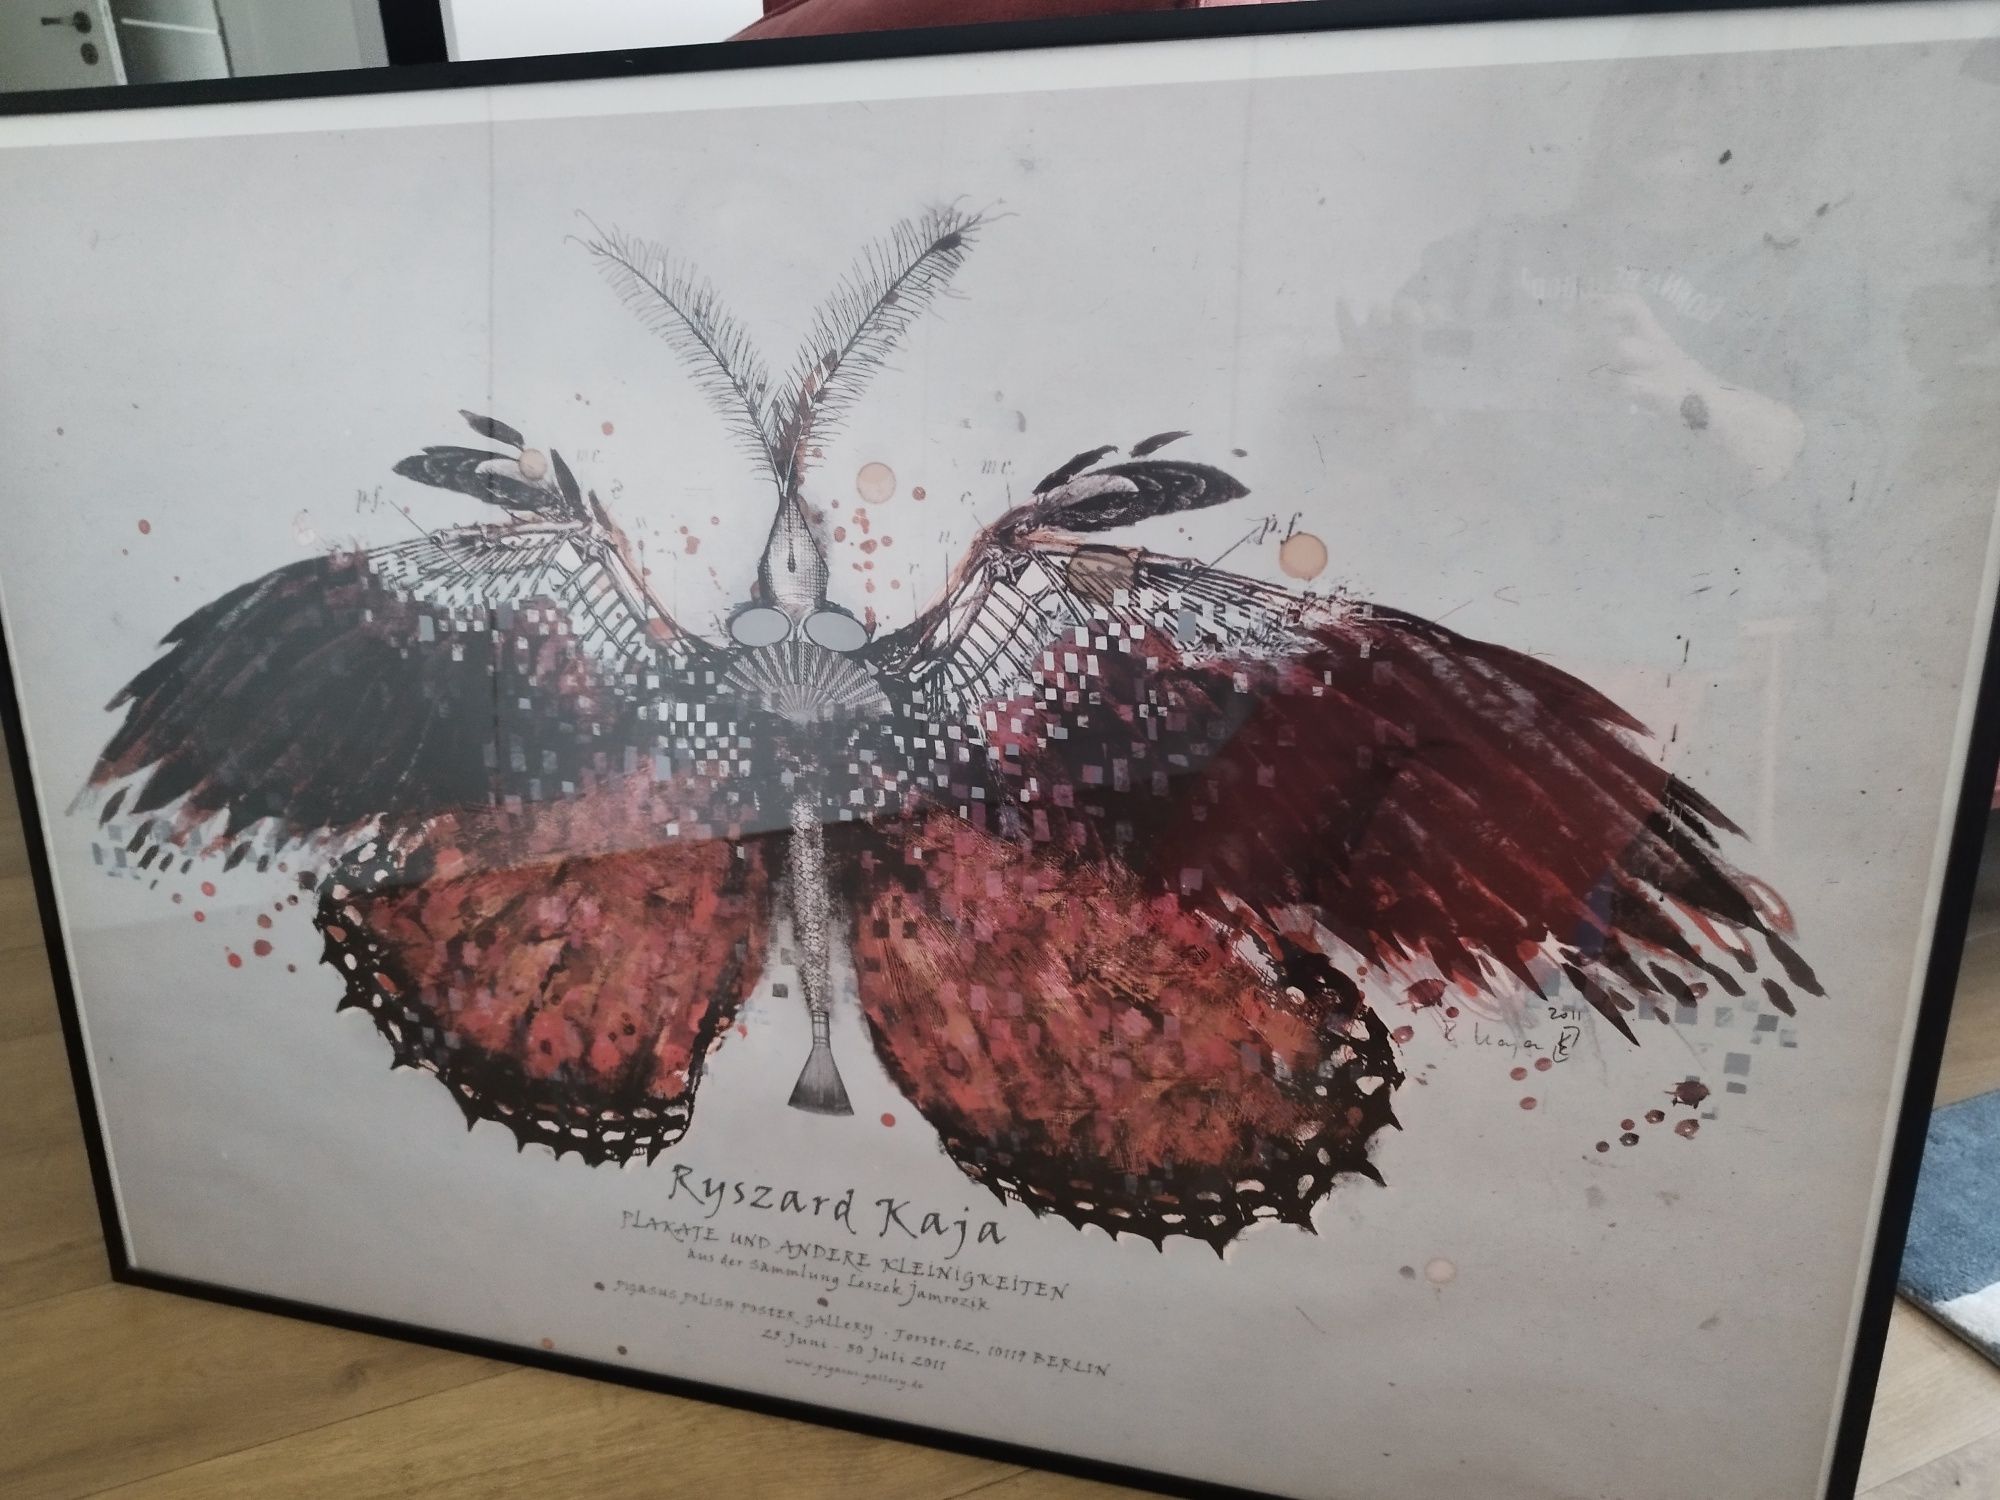 Ryszard Kaja, plakat, motyl duży